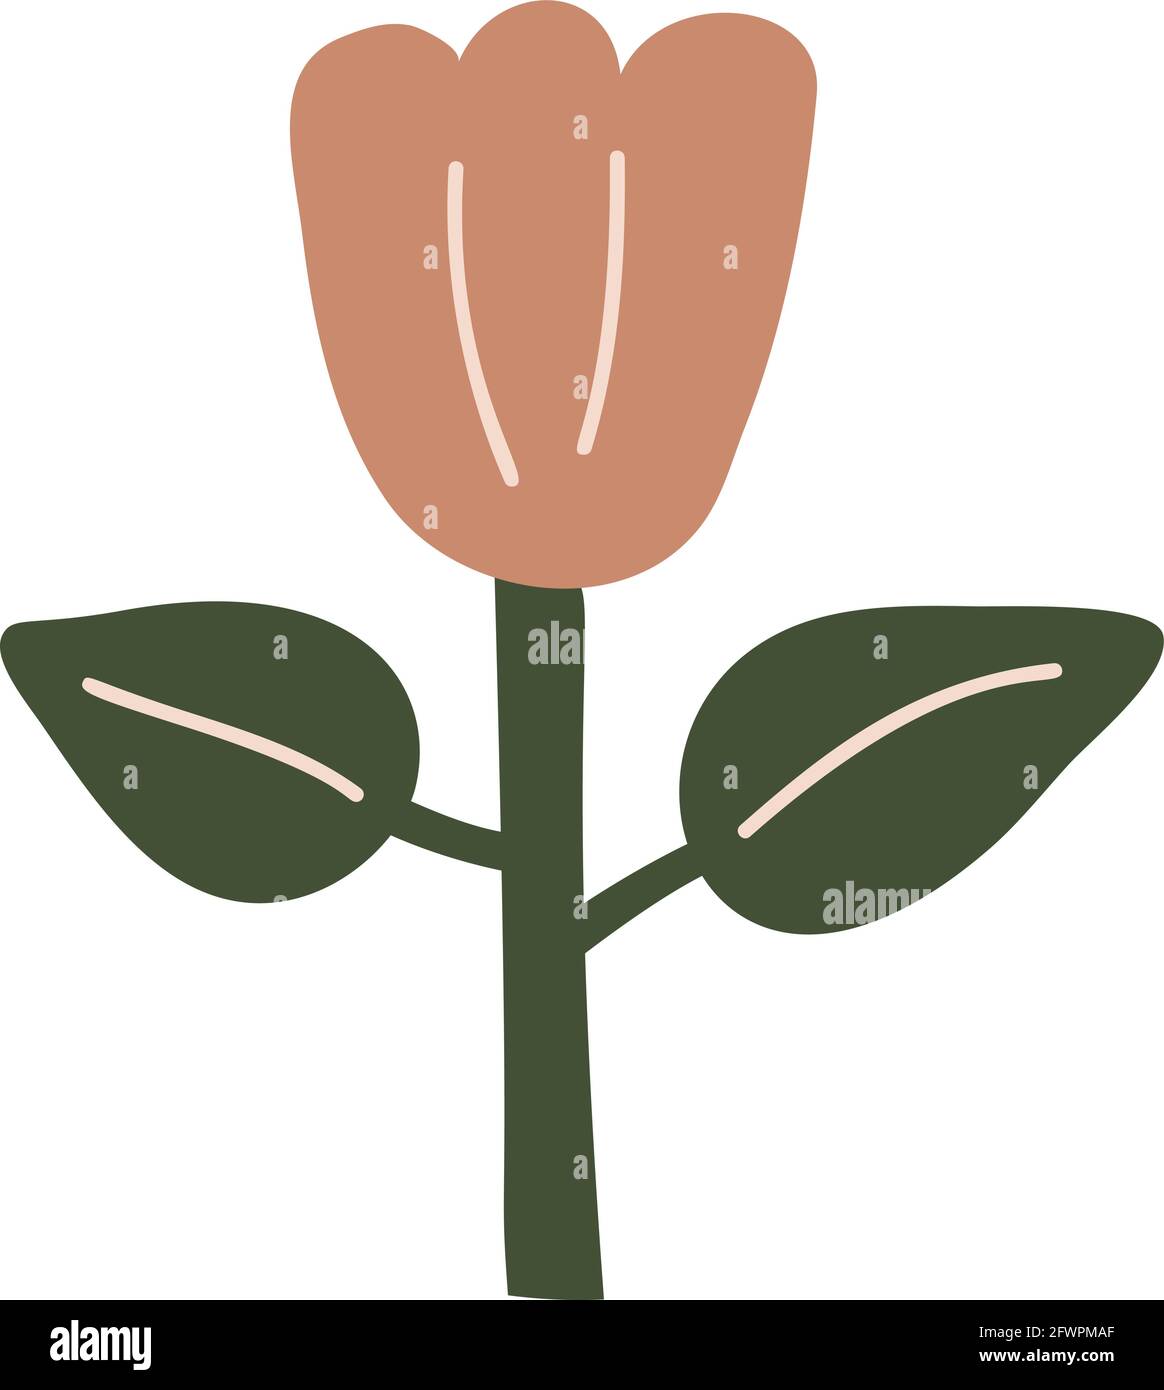 Fleur de printemps vectorielle stylisée. Élément d'illustration scandinave. Image florale d'été décorative pour carte de Saint-Valentin ou affiche de voeux, vacances Illustration de Vecteur